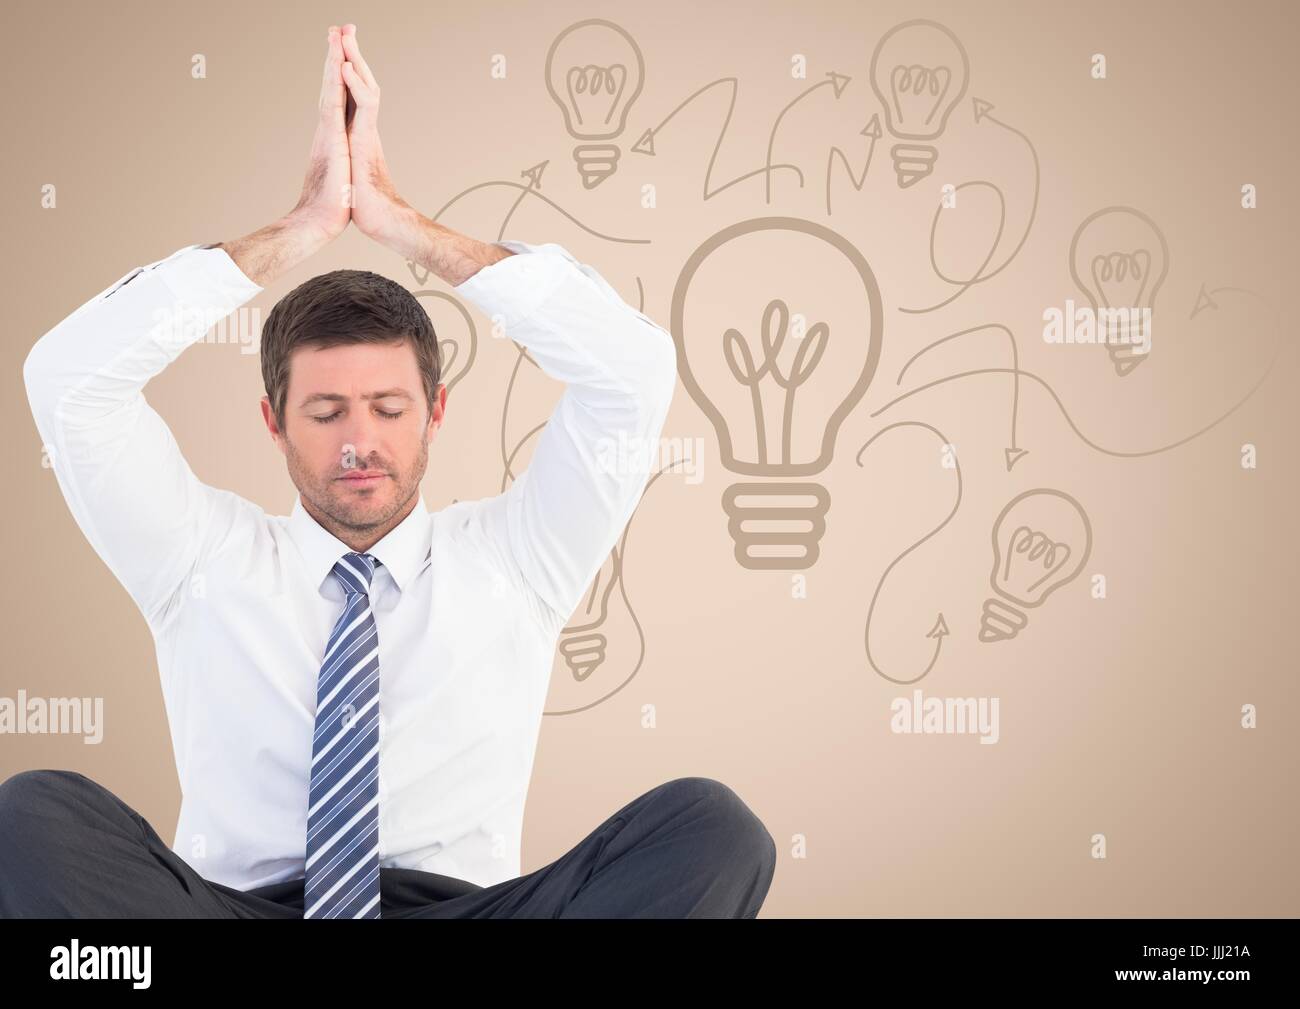 Geschäftsmann gegen cremefarbenen Hintergrund mit Glühbirne Doodle meditieren Stockfoto